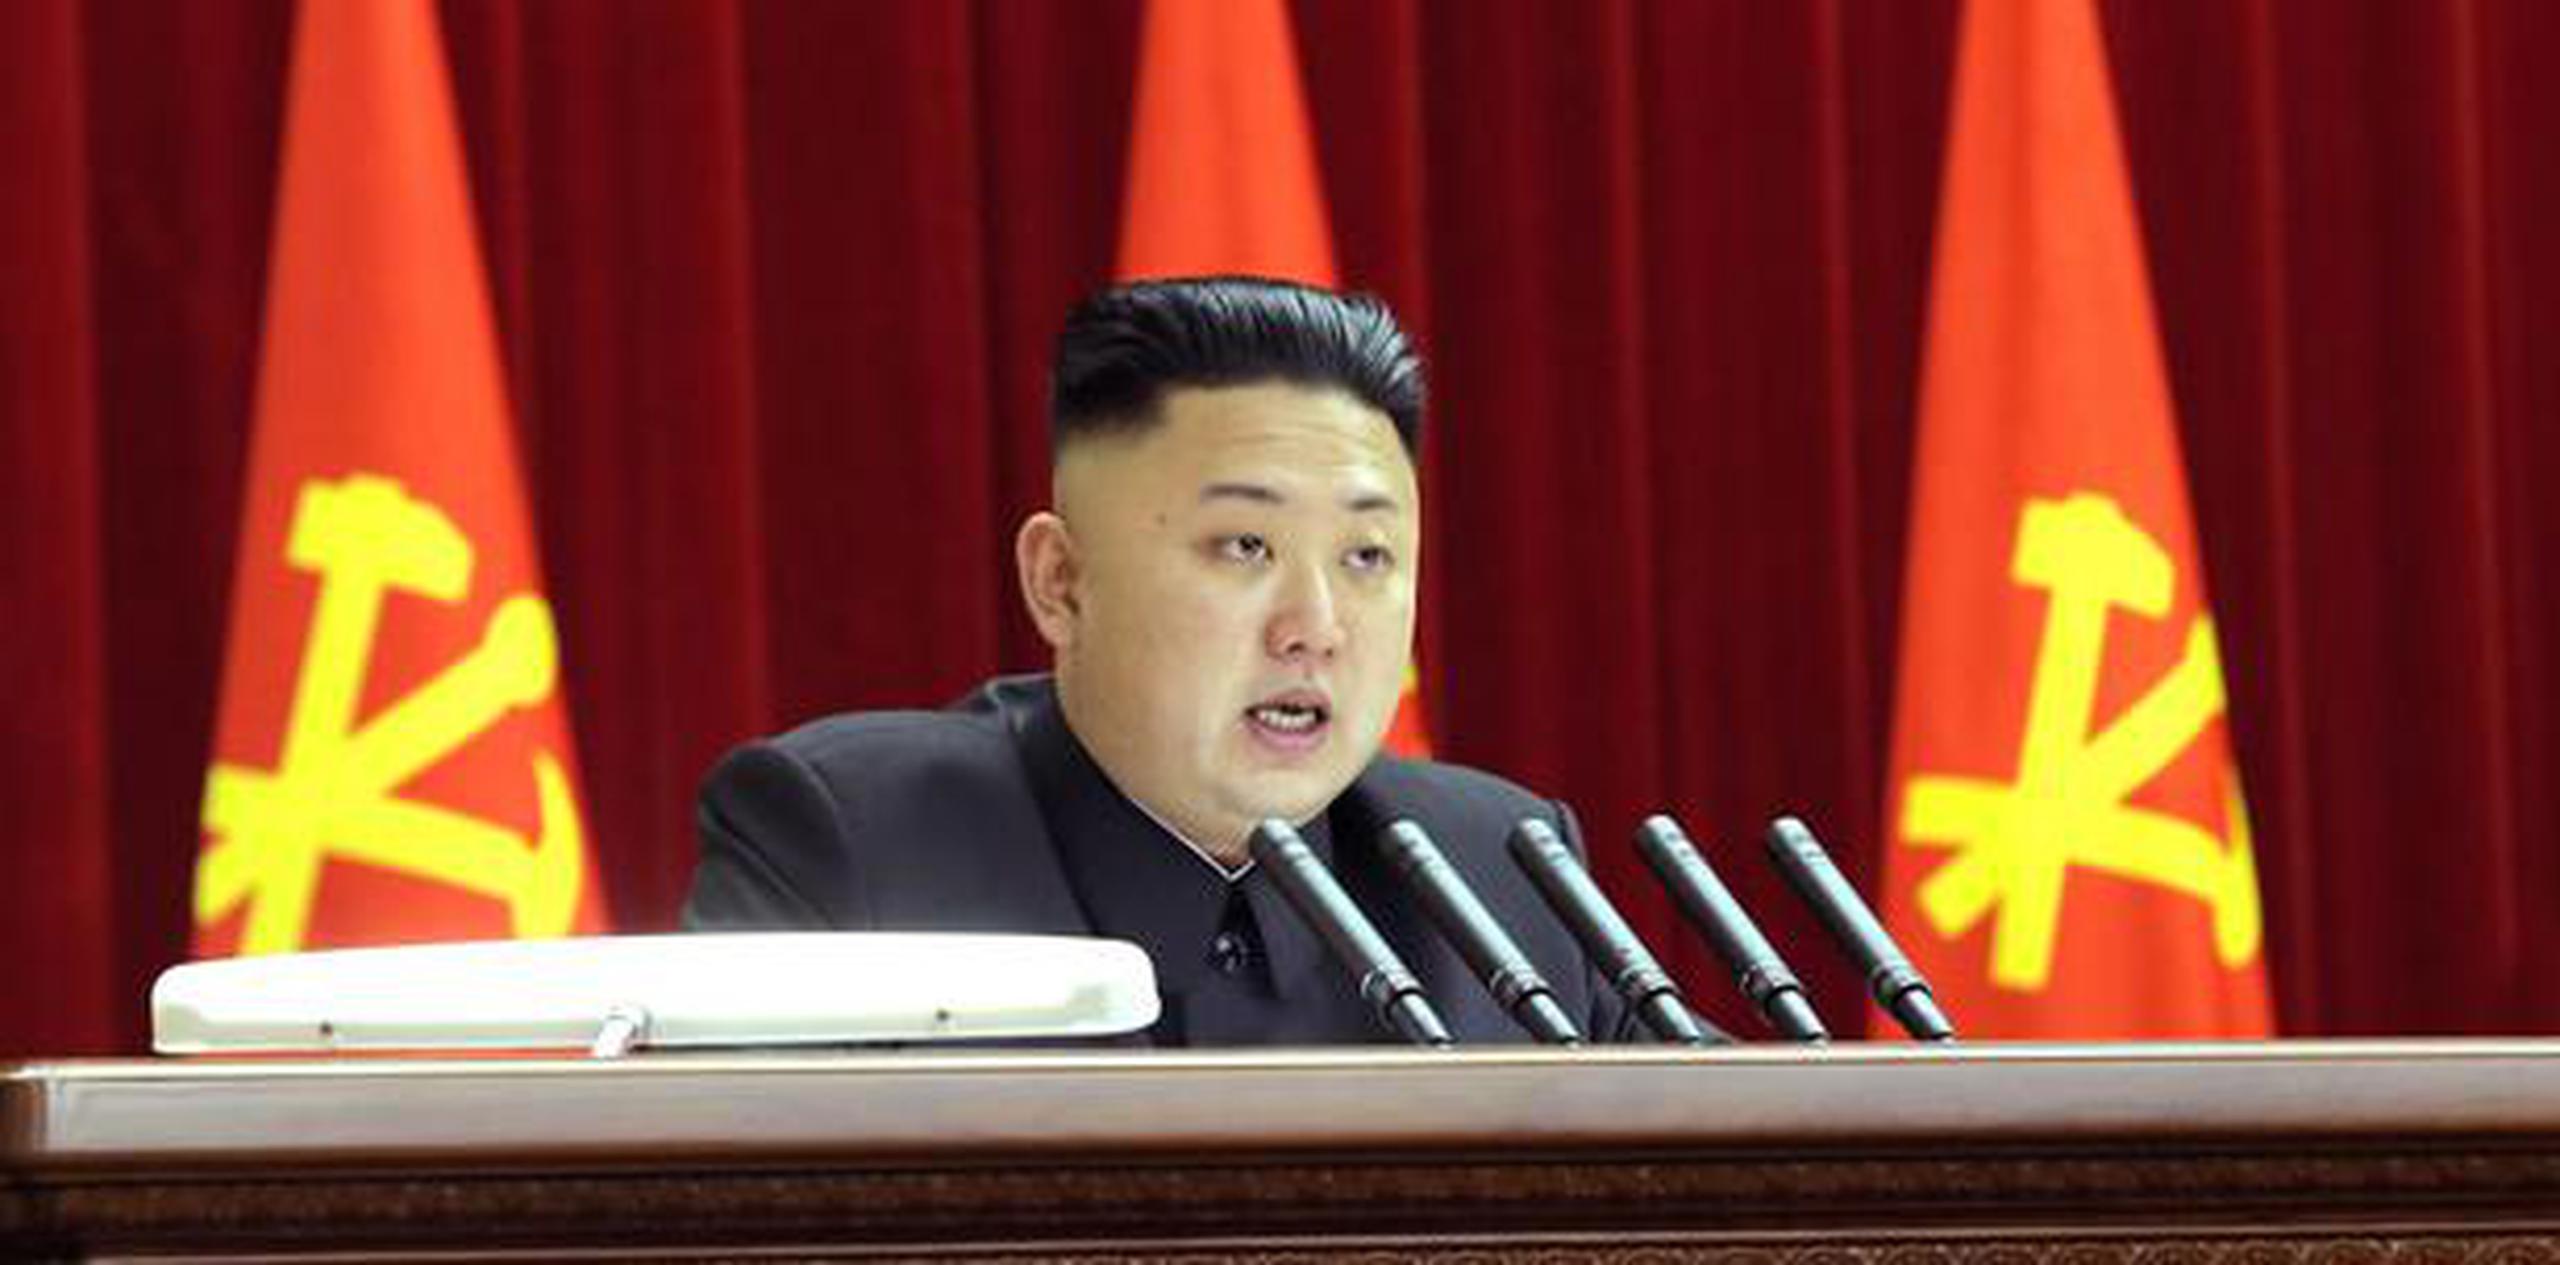 El líder de 32 años ha reafirmado en varias ocasiones que Corea del Norte posee armas nucleares y que este recurso es el principal pilar de su defensa para contrarrestar unos supuestos planes de invasión del país por parte de EE.UU. (AP)